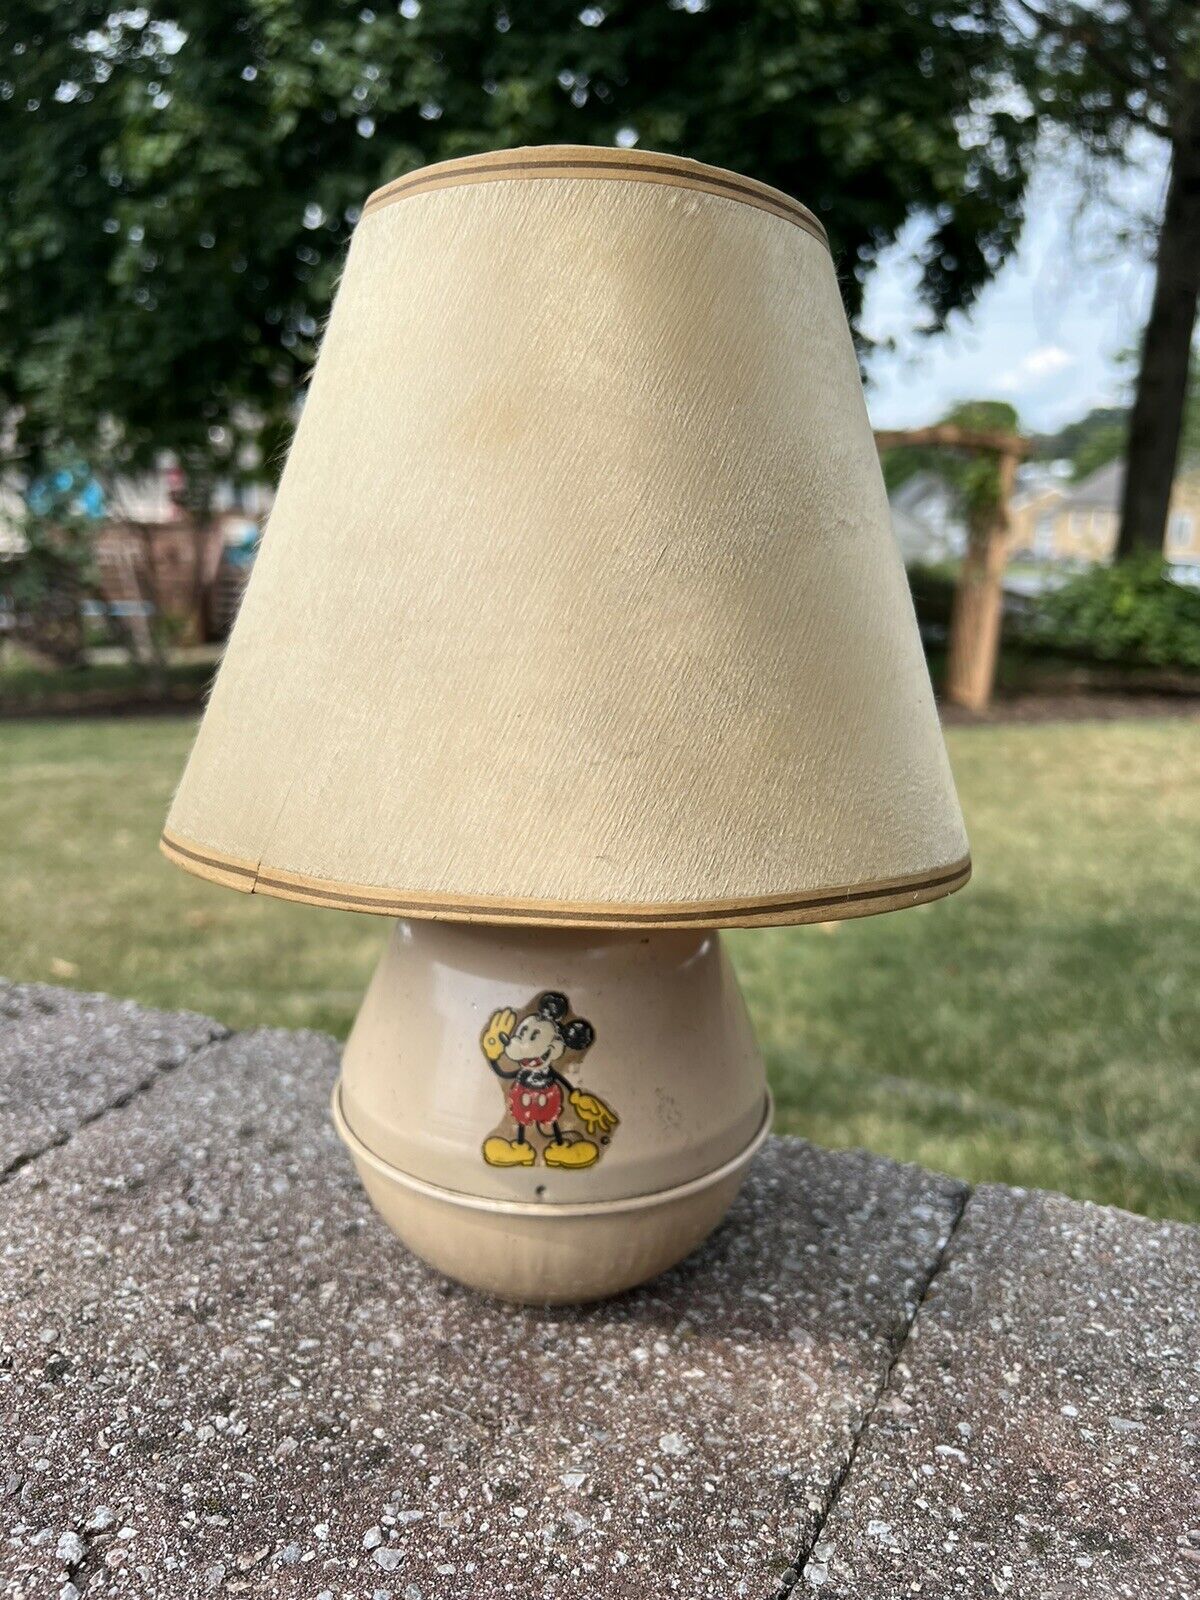 Vintage 1930s Mickey Mouse Lamp Base Soreng Manegold And Lamp Shade